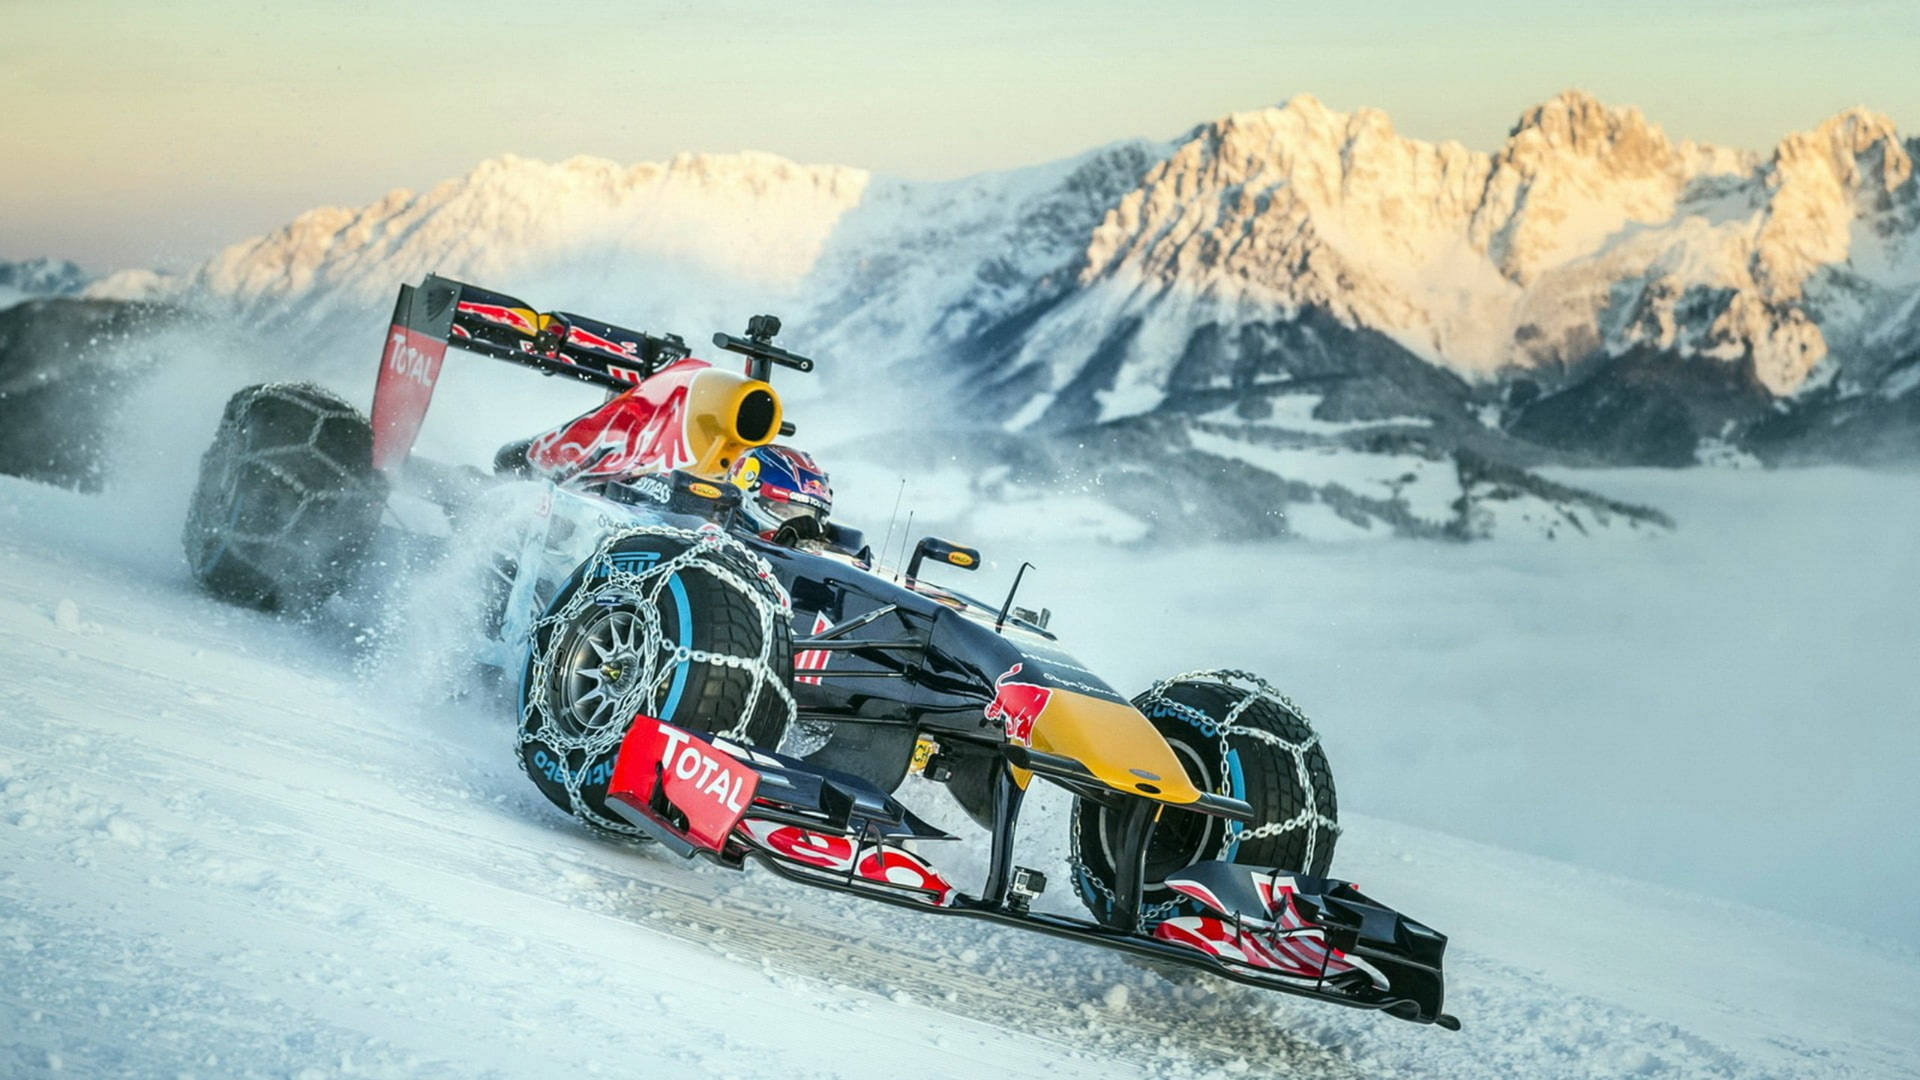 F1 Racing Car In Snow Road Wallpaper